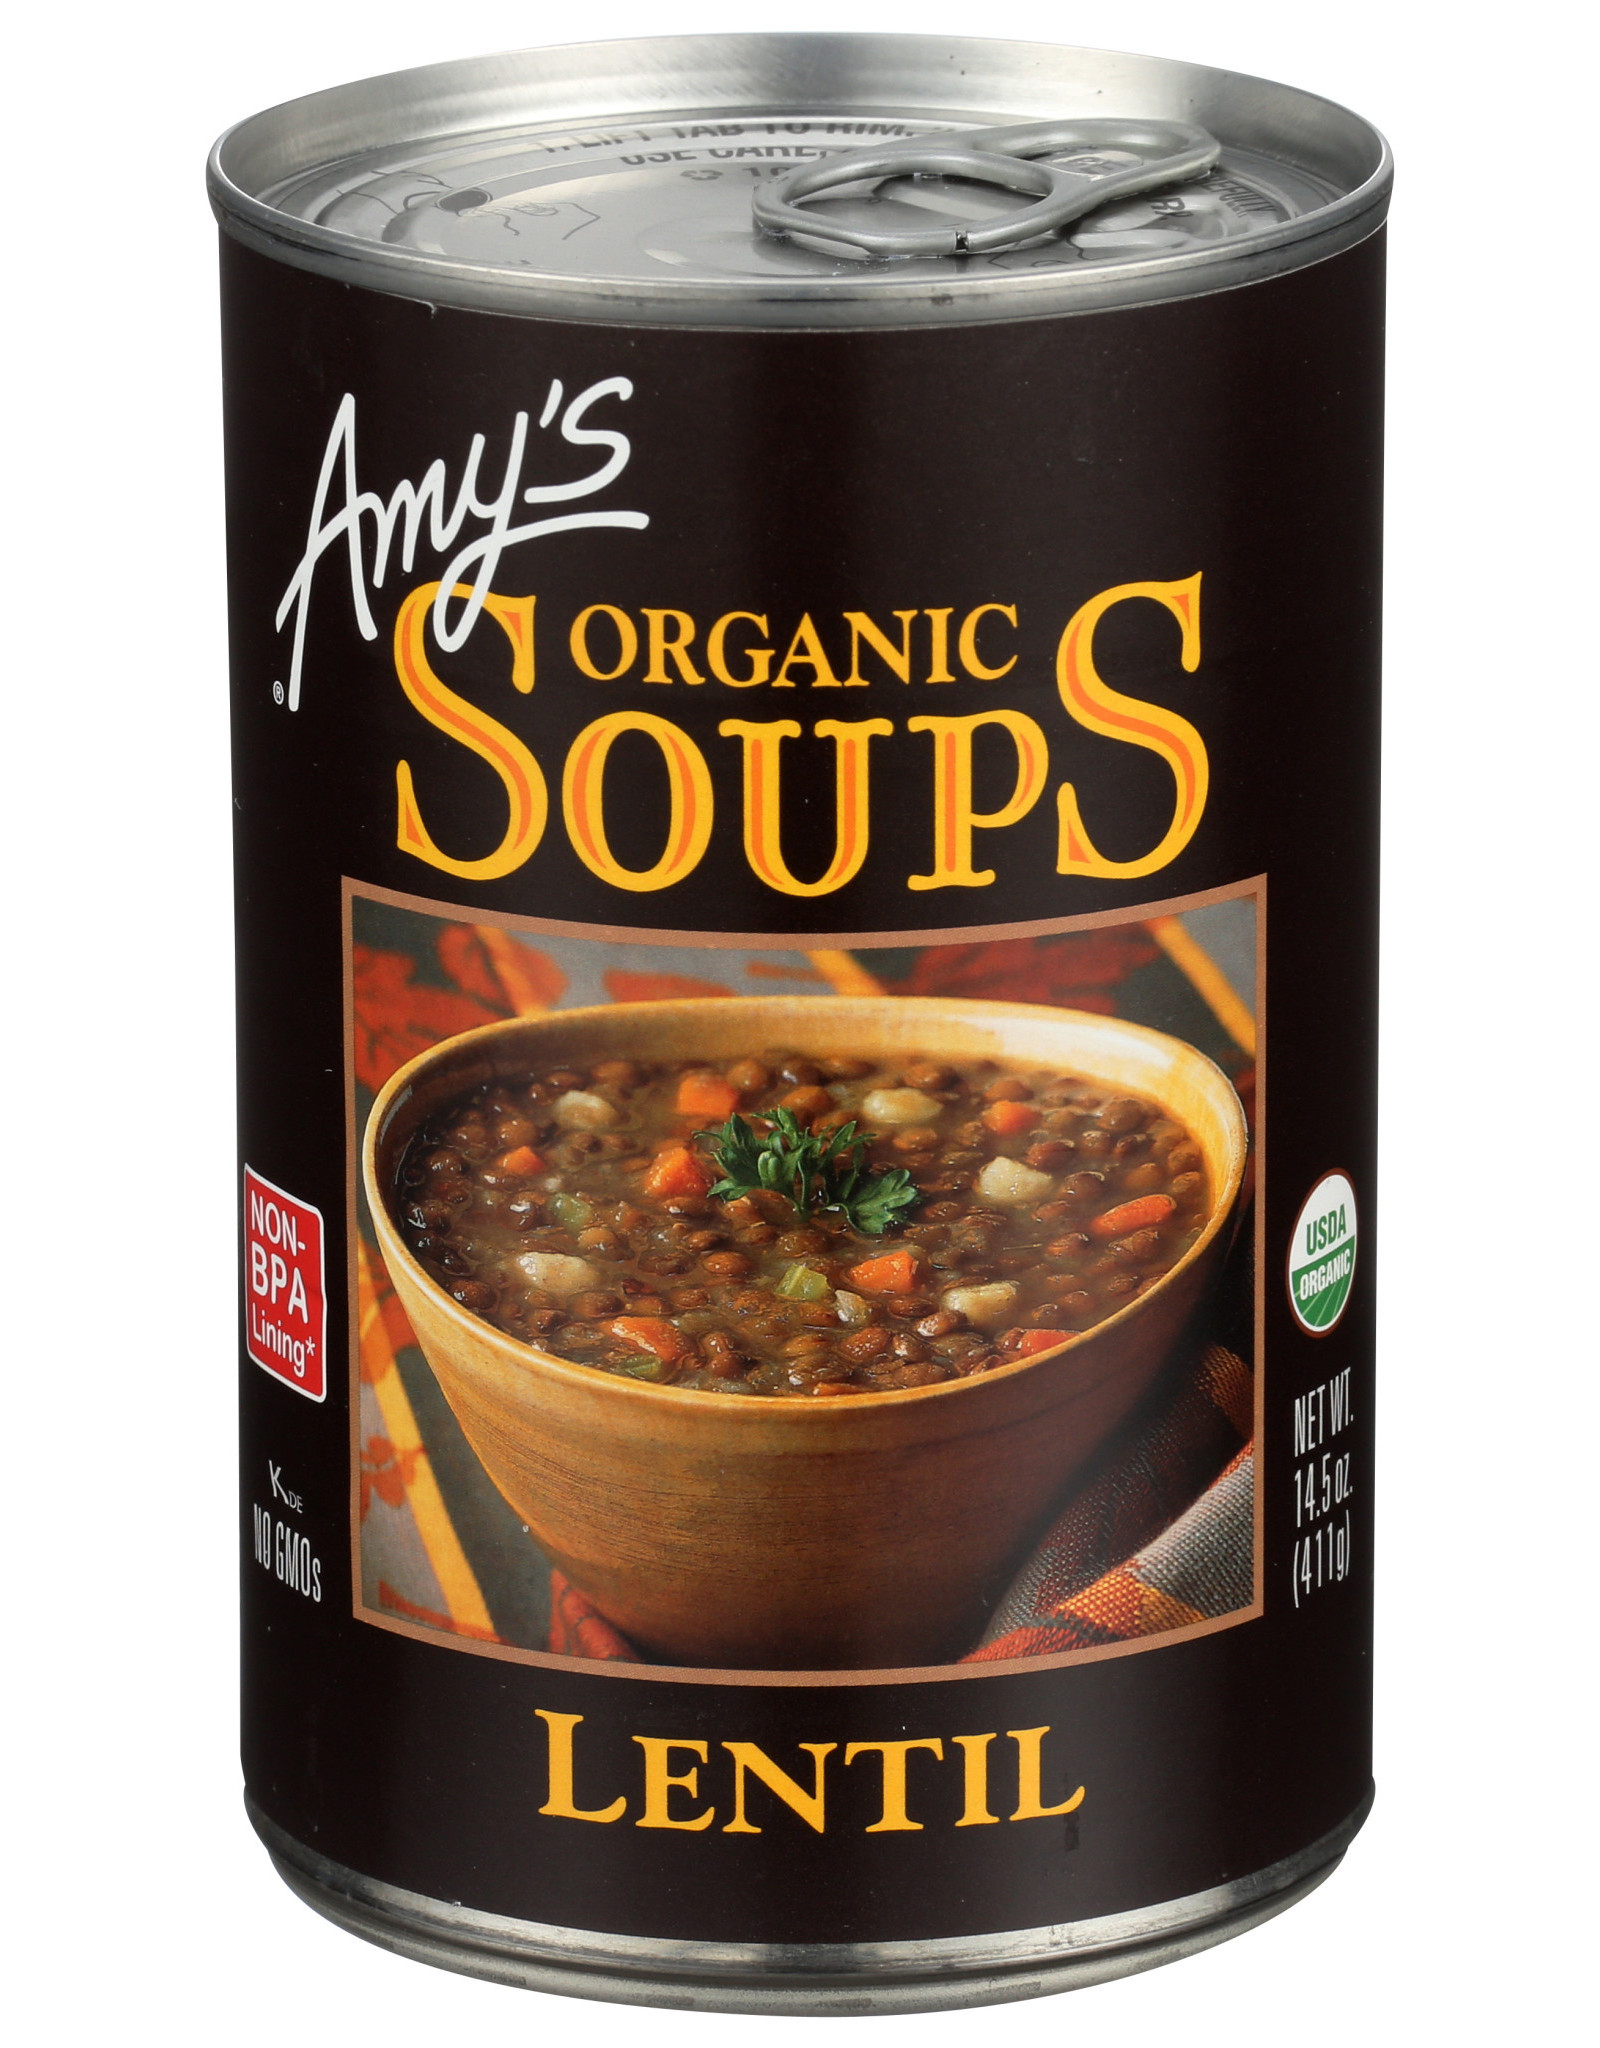 Amys OG Lentil Soup 14.5 oz